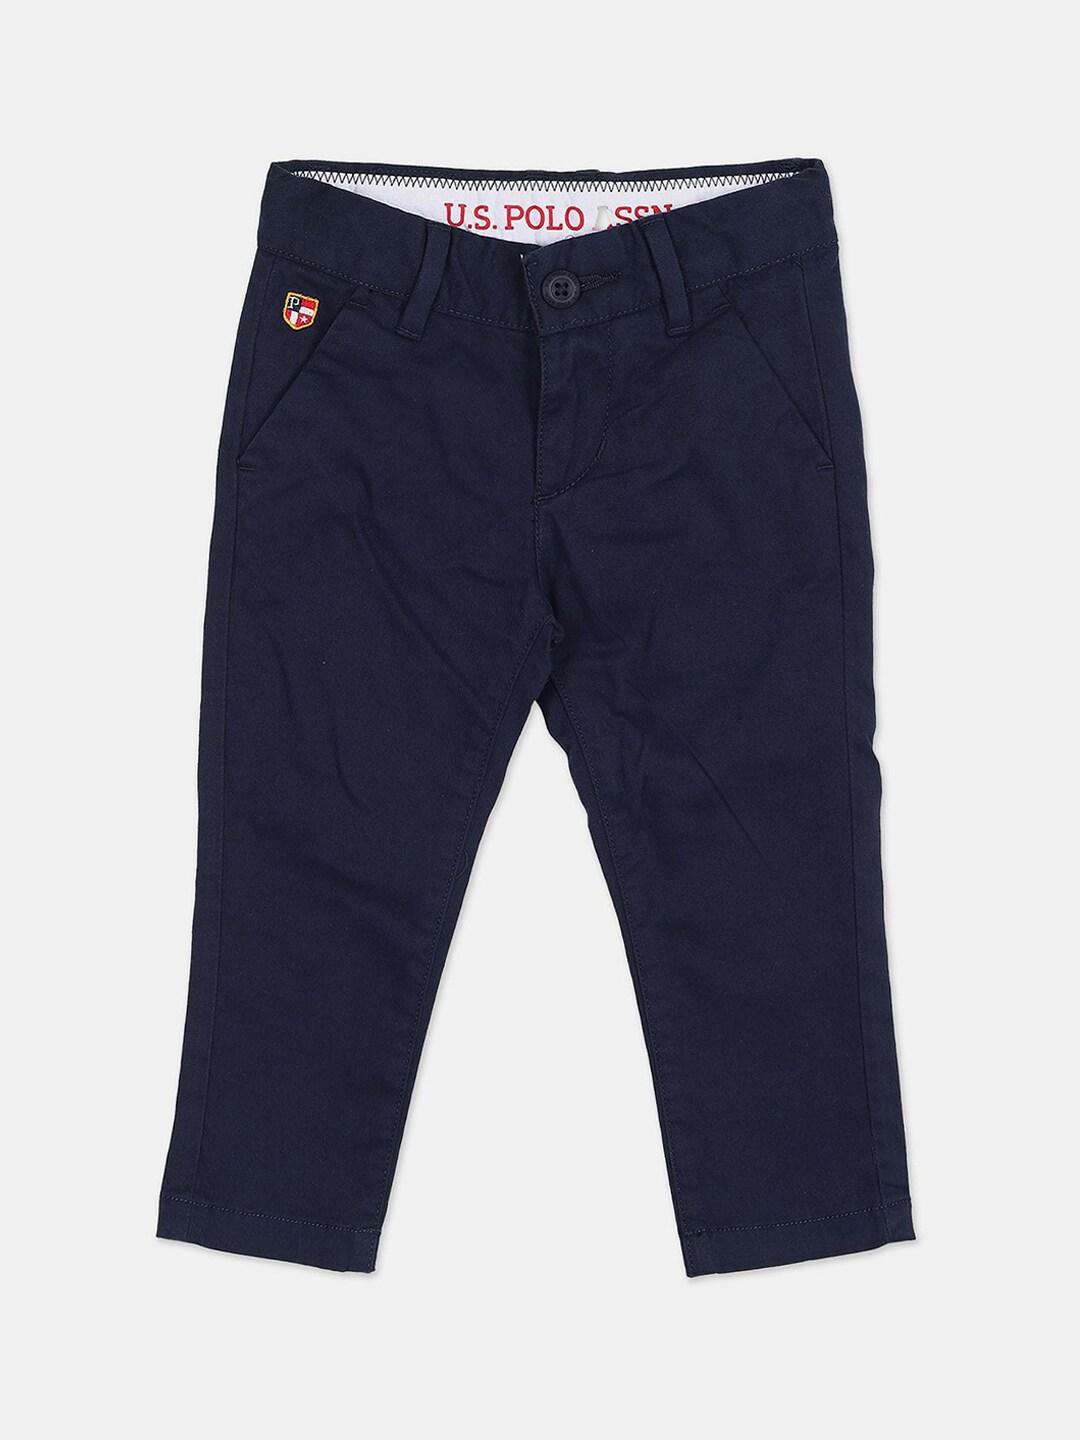 U.S. Polo Assn. Boys Blue Trousers